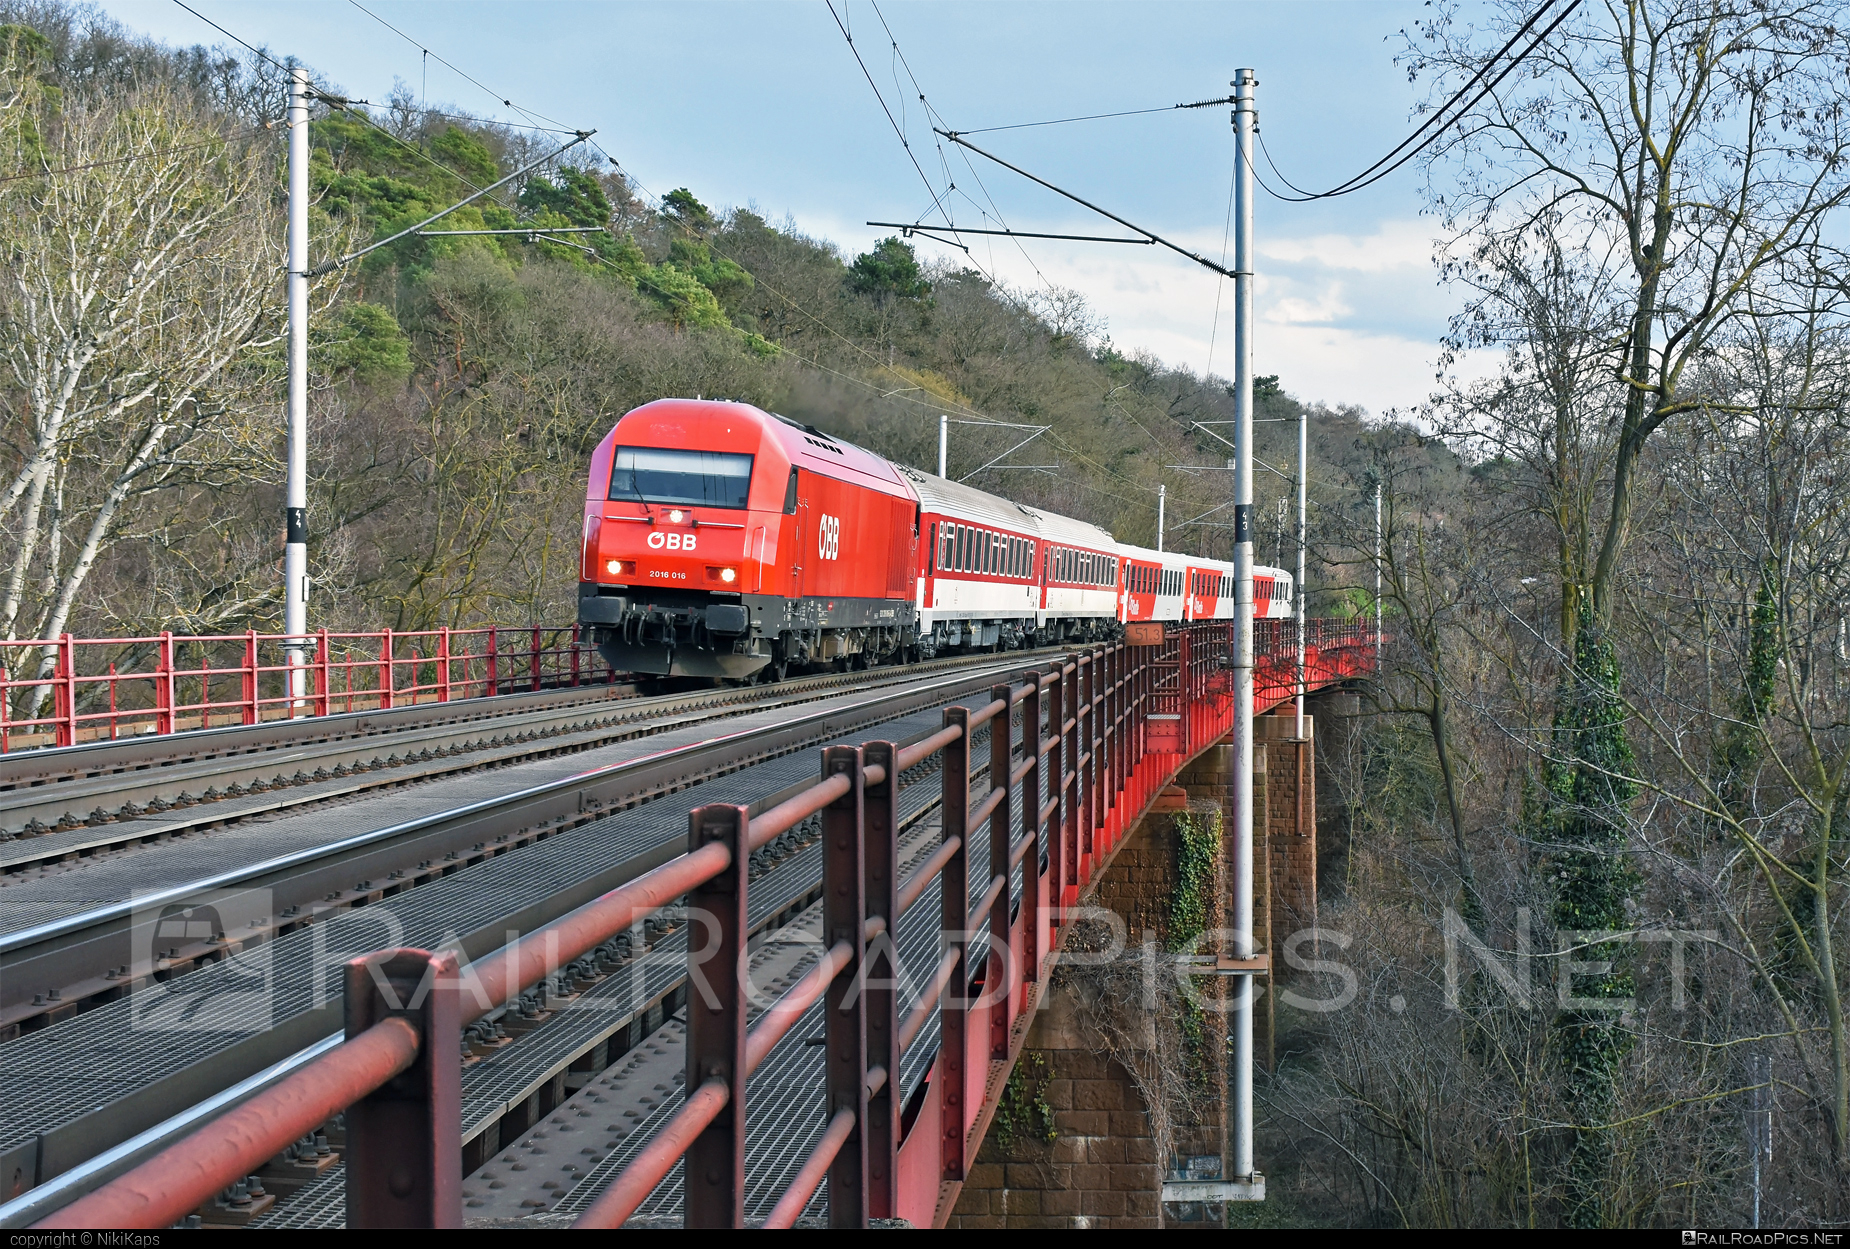 Siemens ER20 - 2016 016 operated by Österreichische Bundesbahnen #bridge #cityshuttle #er20 #er20hercules #eurorunner #hercules #obb #osterreichischebundesbahnen #siemens #siemenser20 #siemenser20hercules #siemenseurorunner #siemenshercules